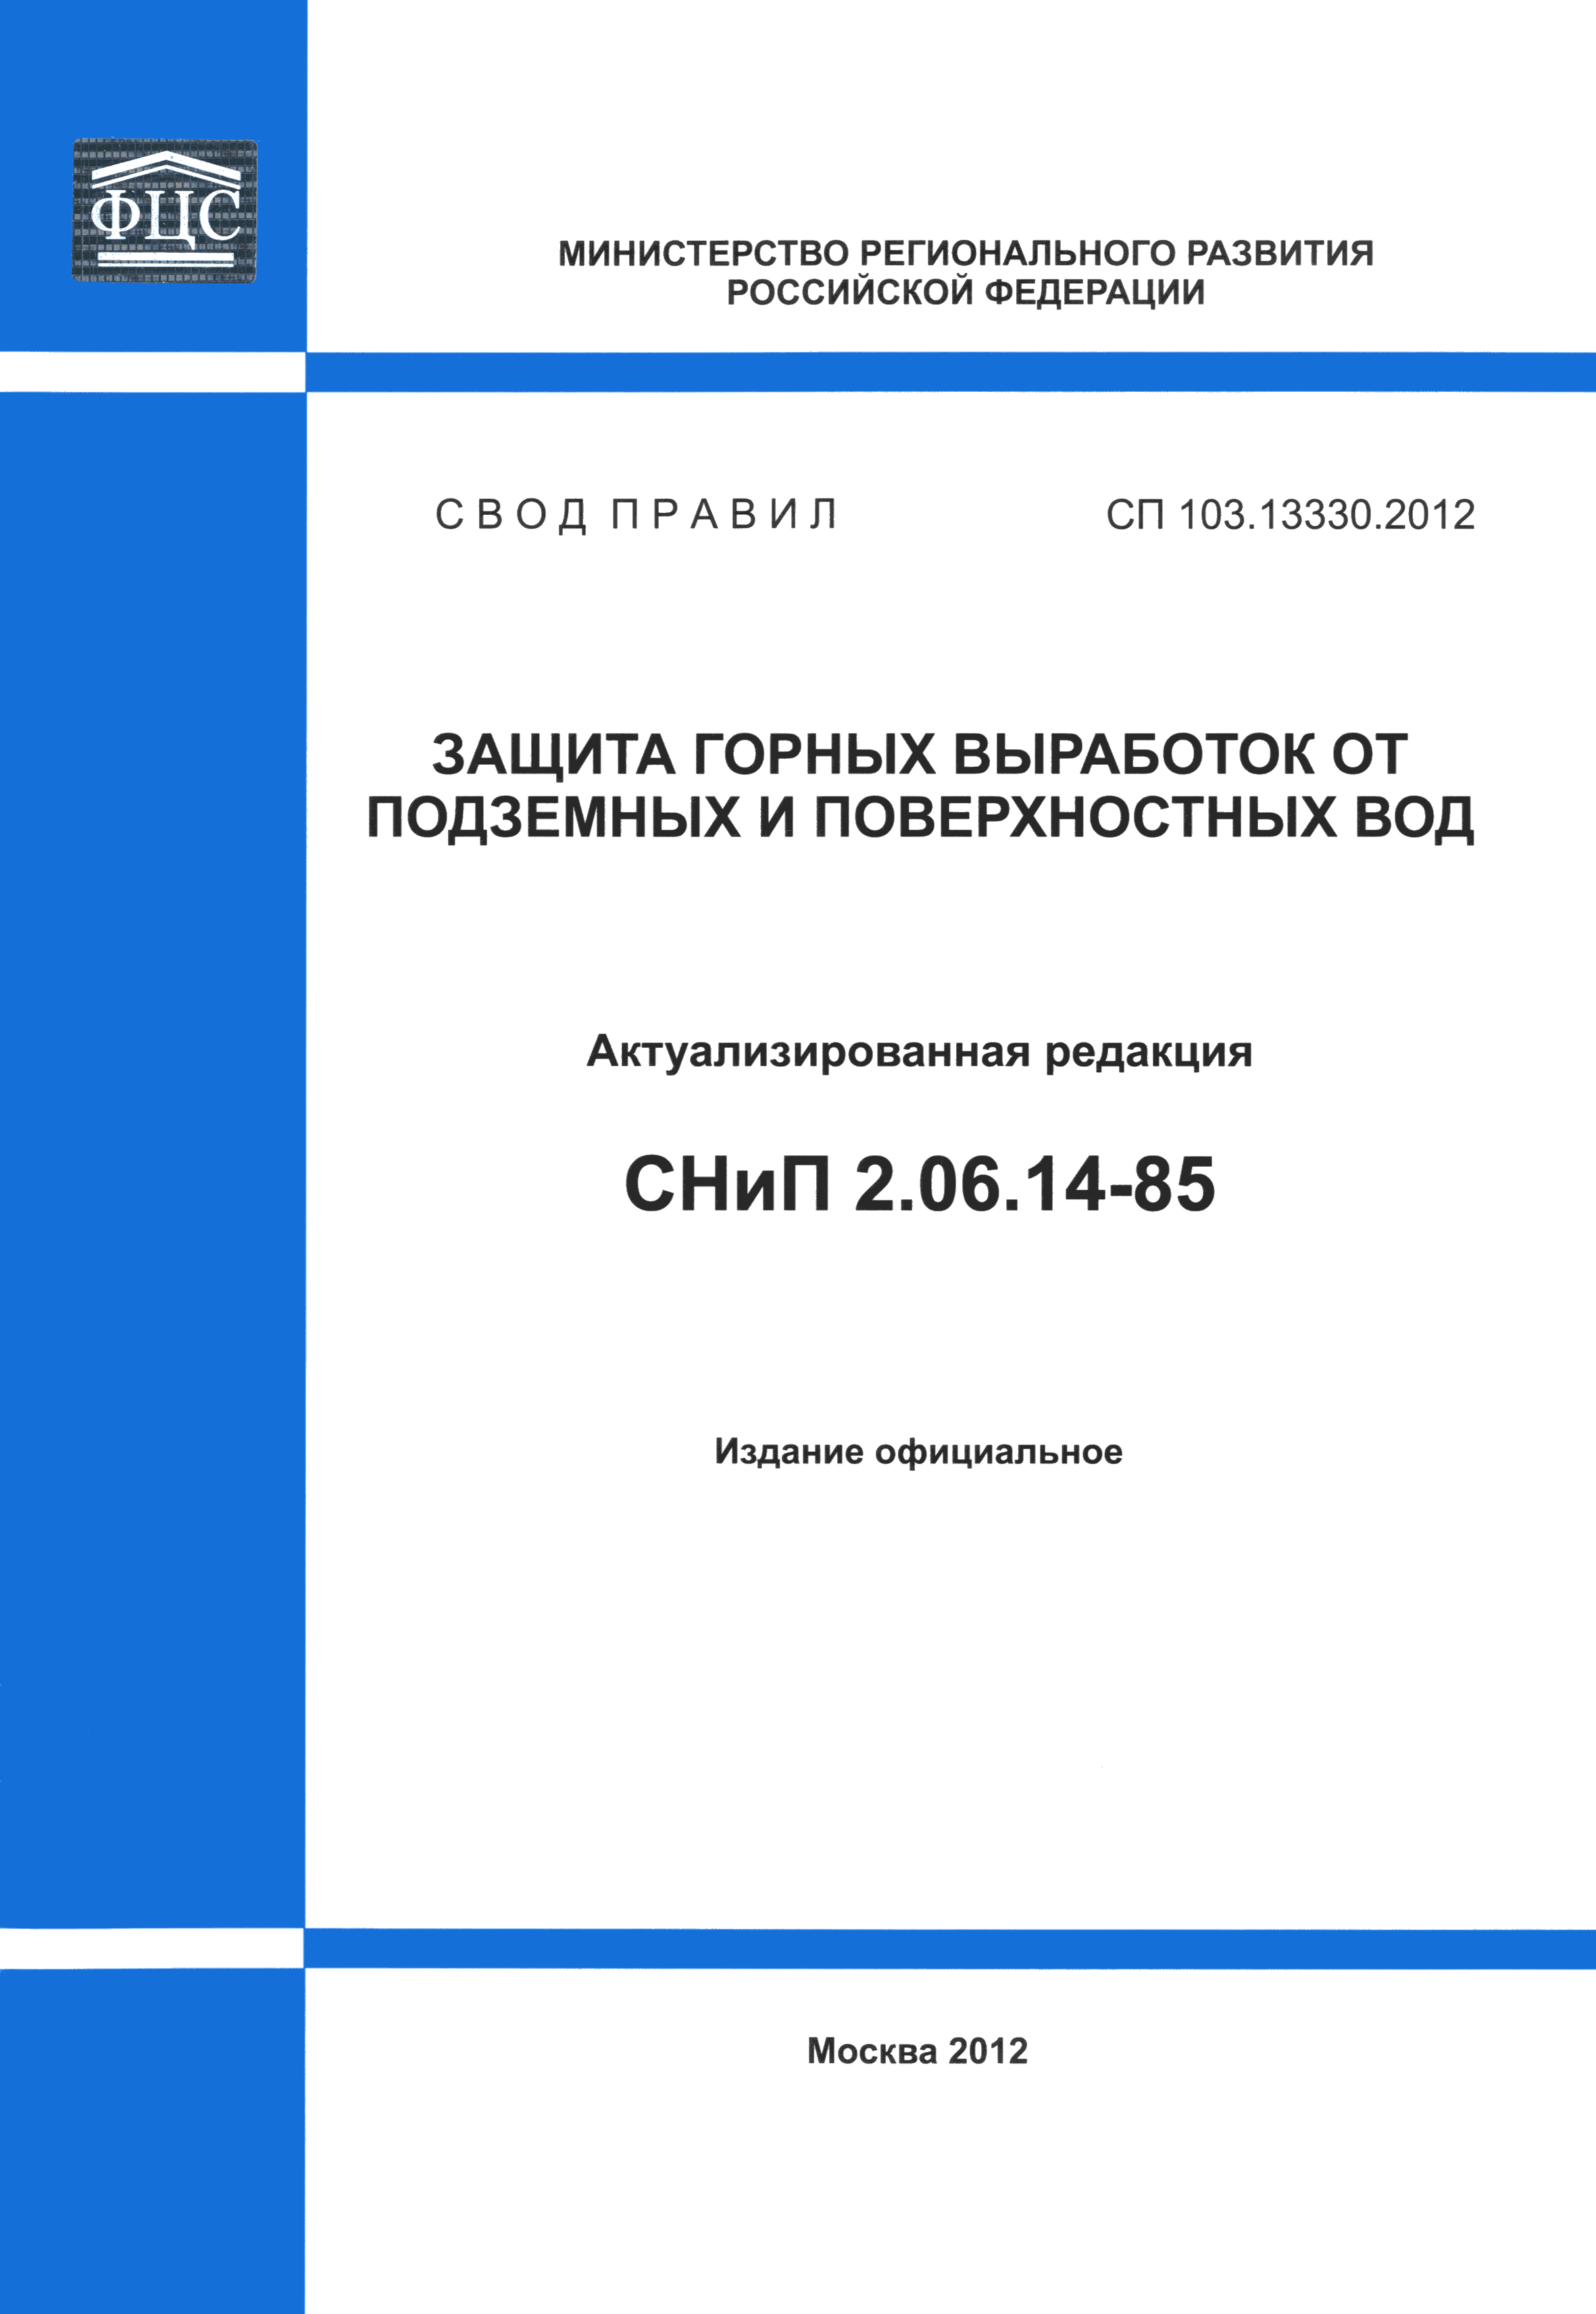 СП 103.13330.2012